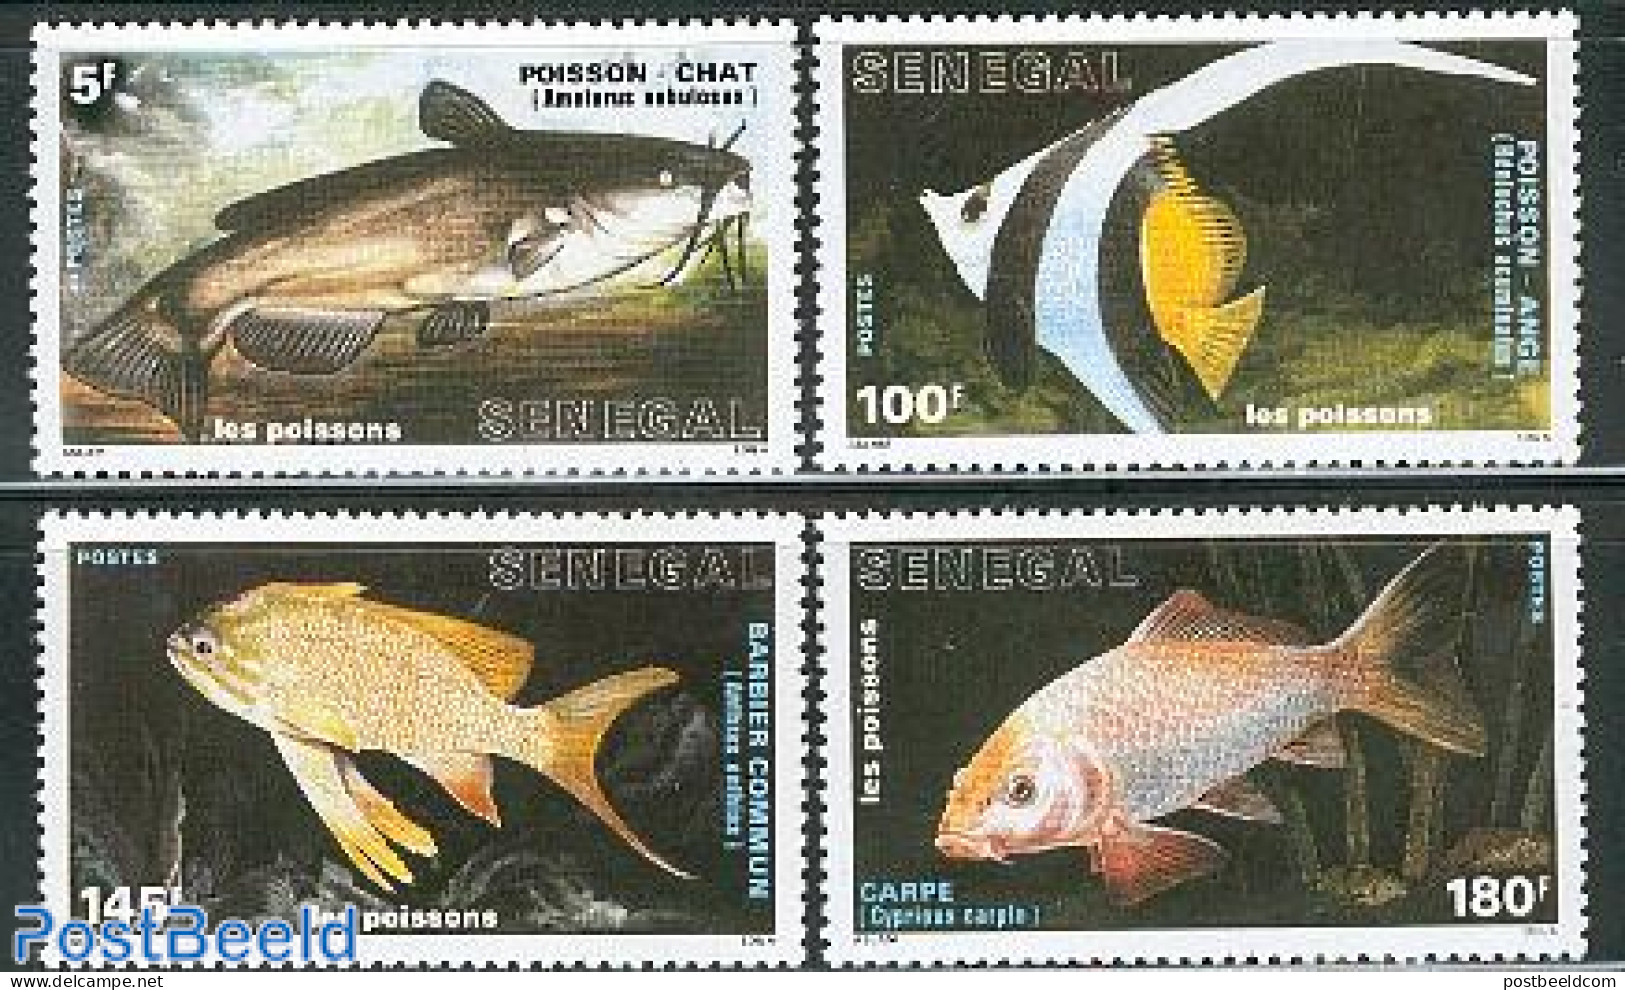 Senegal 1988 Fish 4v, Mint NH, Nature - Fish - Fische